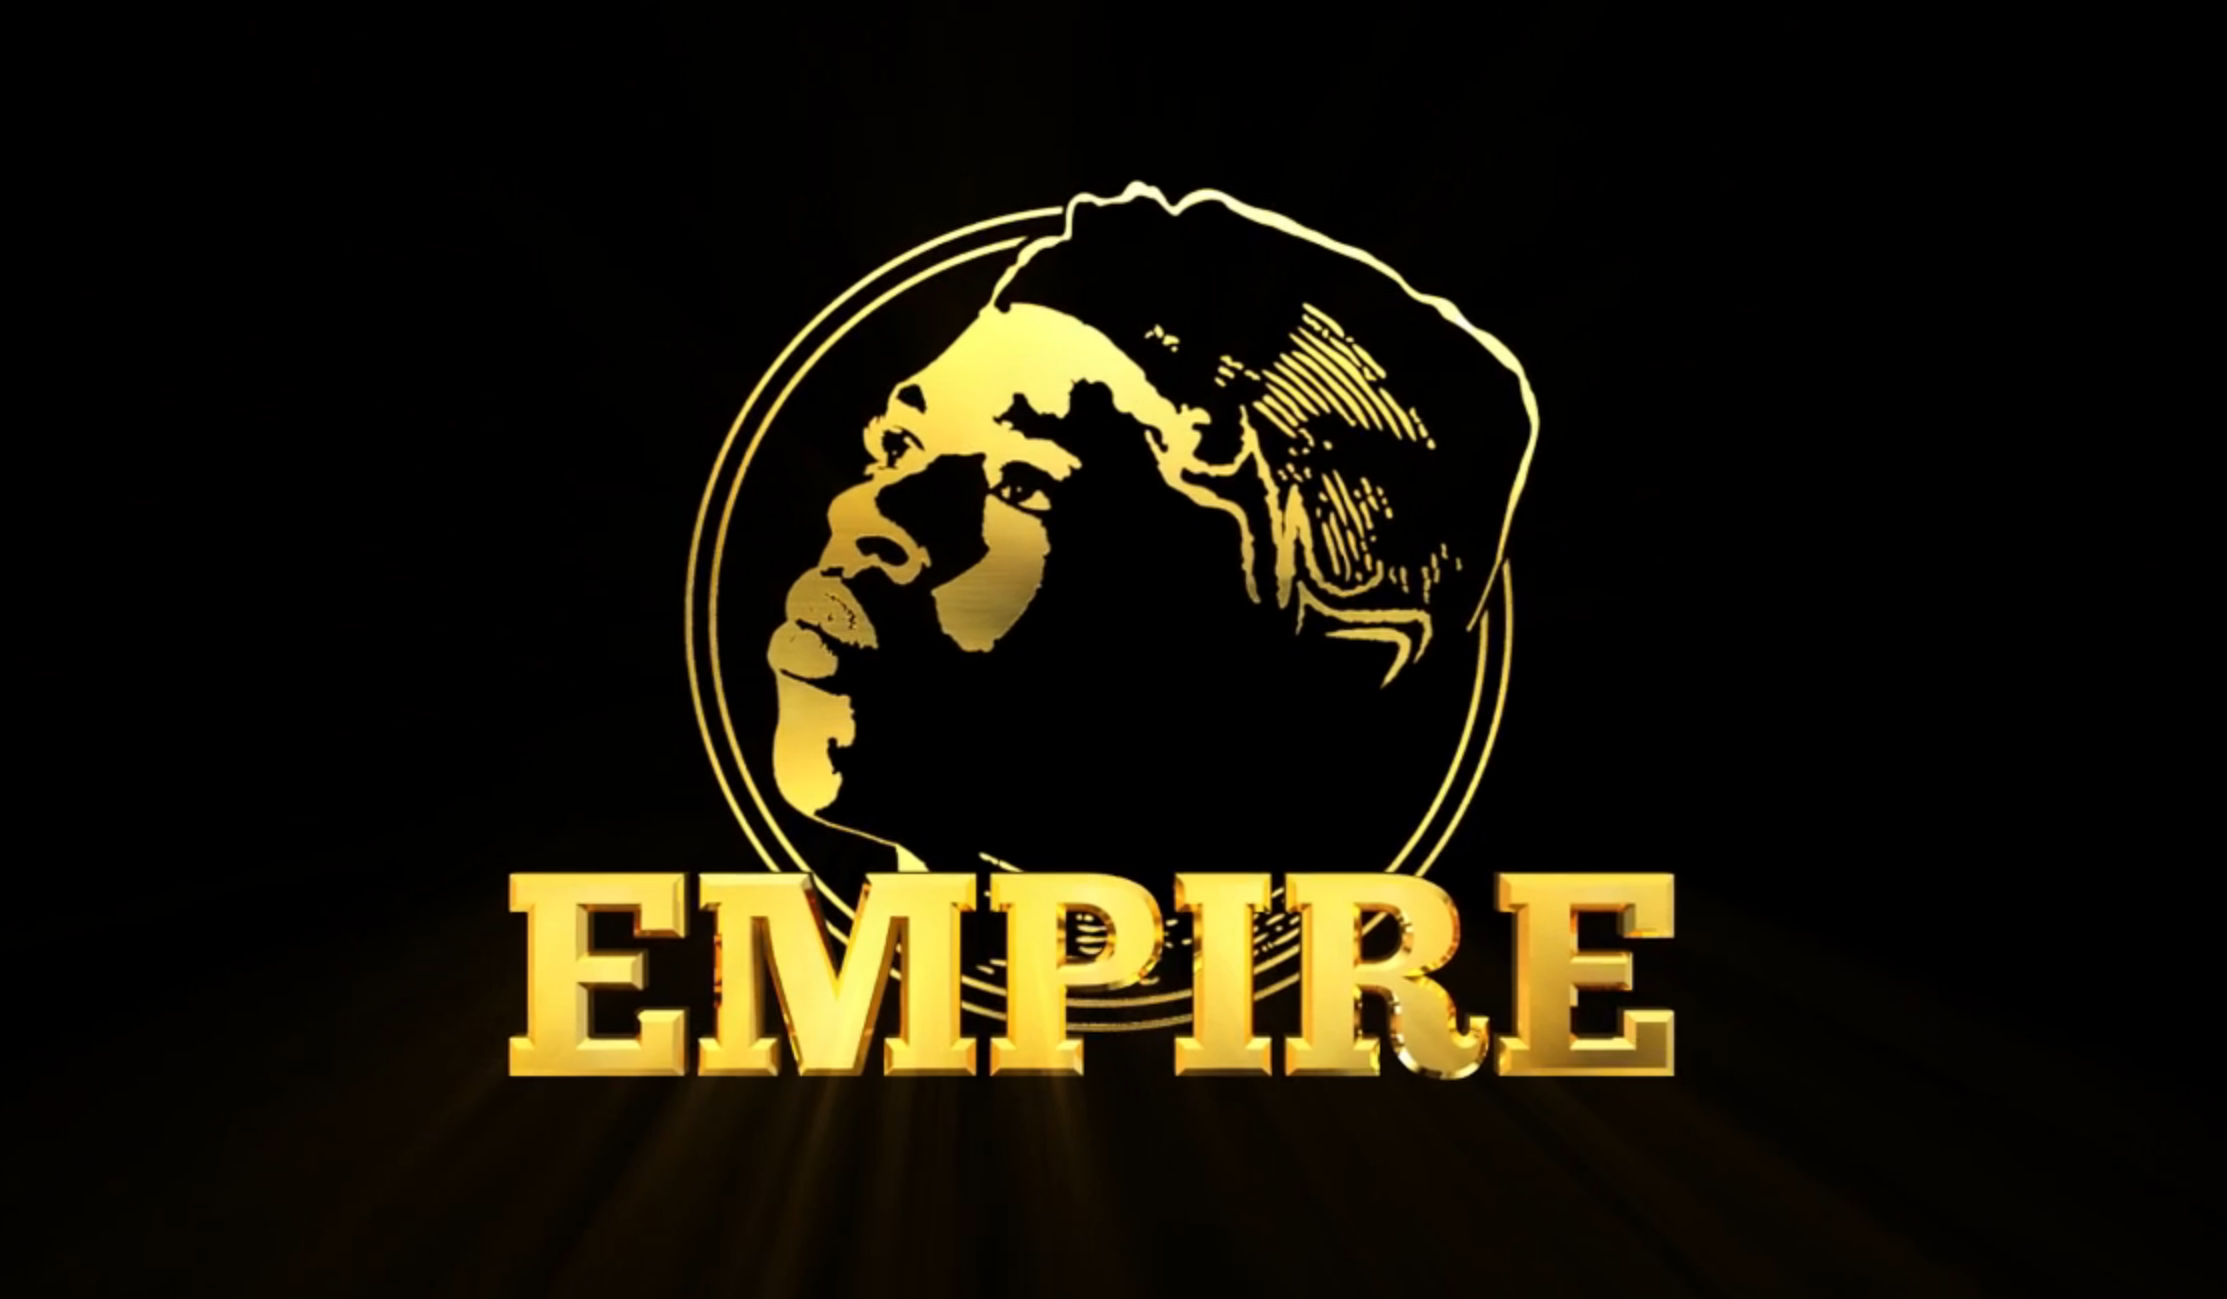 Empire Logos